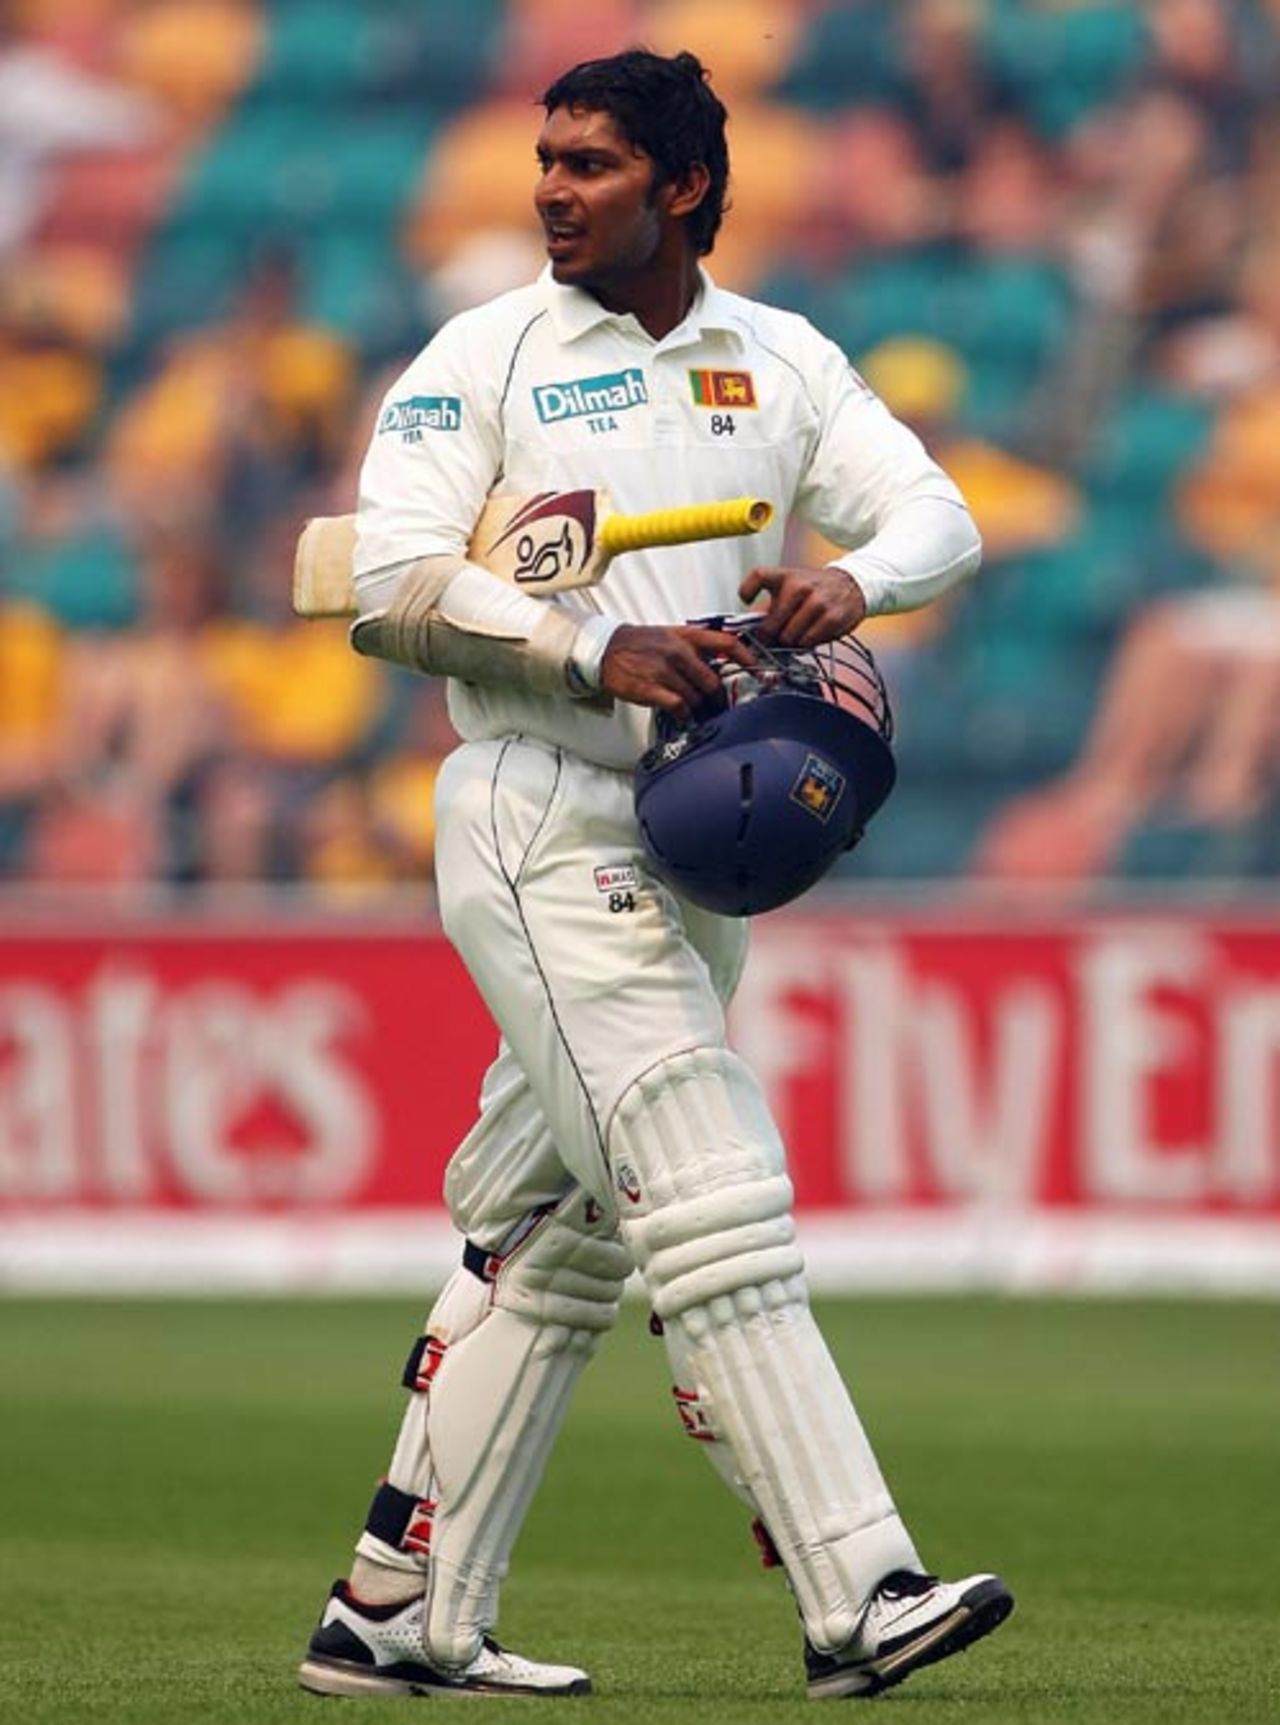 Kumar Sangakkara walks back after being given out for 192, Australia v Sri Lanka,  2nd Test, Hobart, 4th day, November 20, 2007